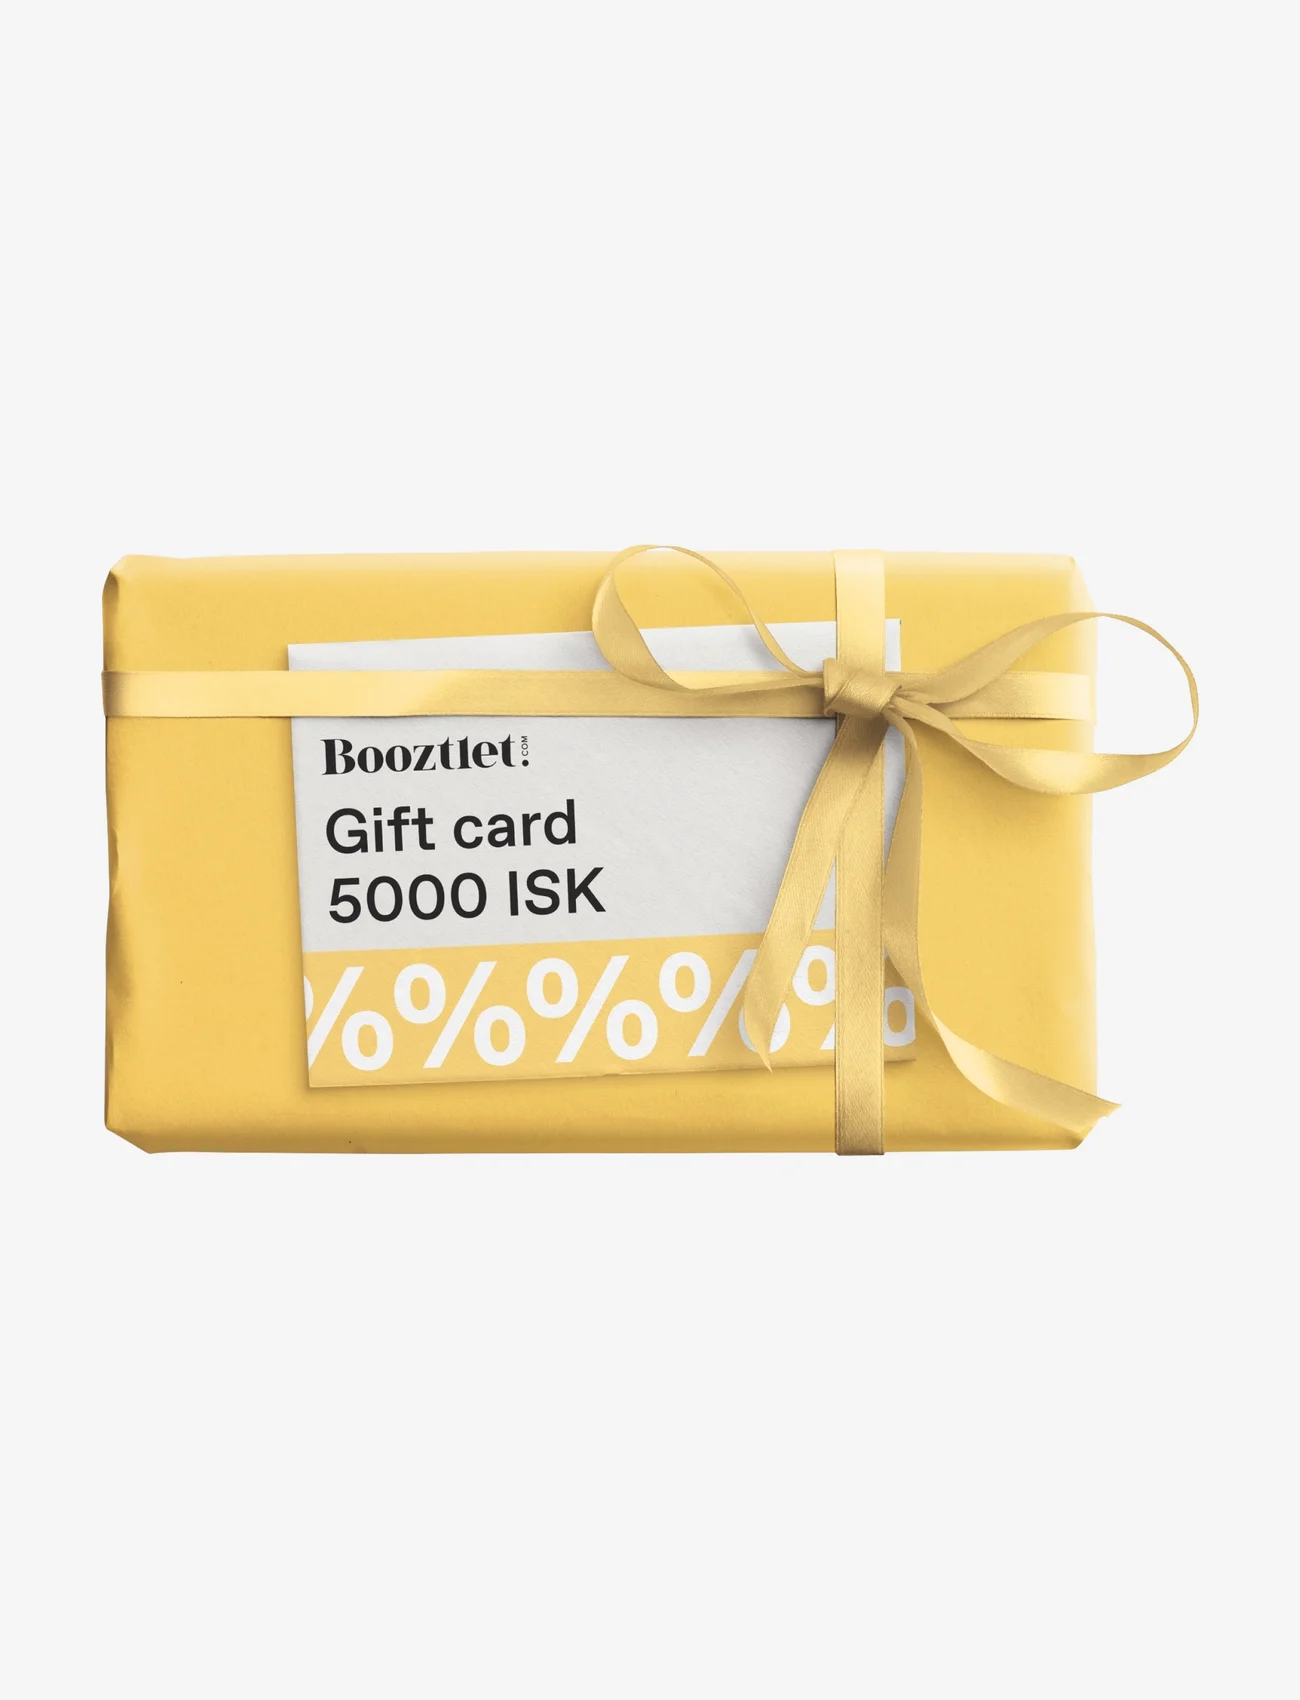 Booztlet Gift - Booztlet Gift Card - gift cards - isk 5000 - 0